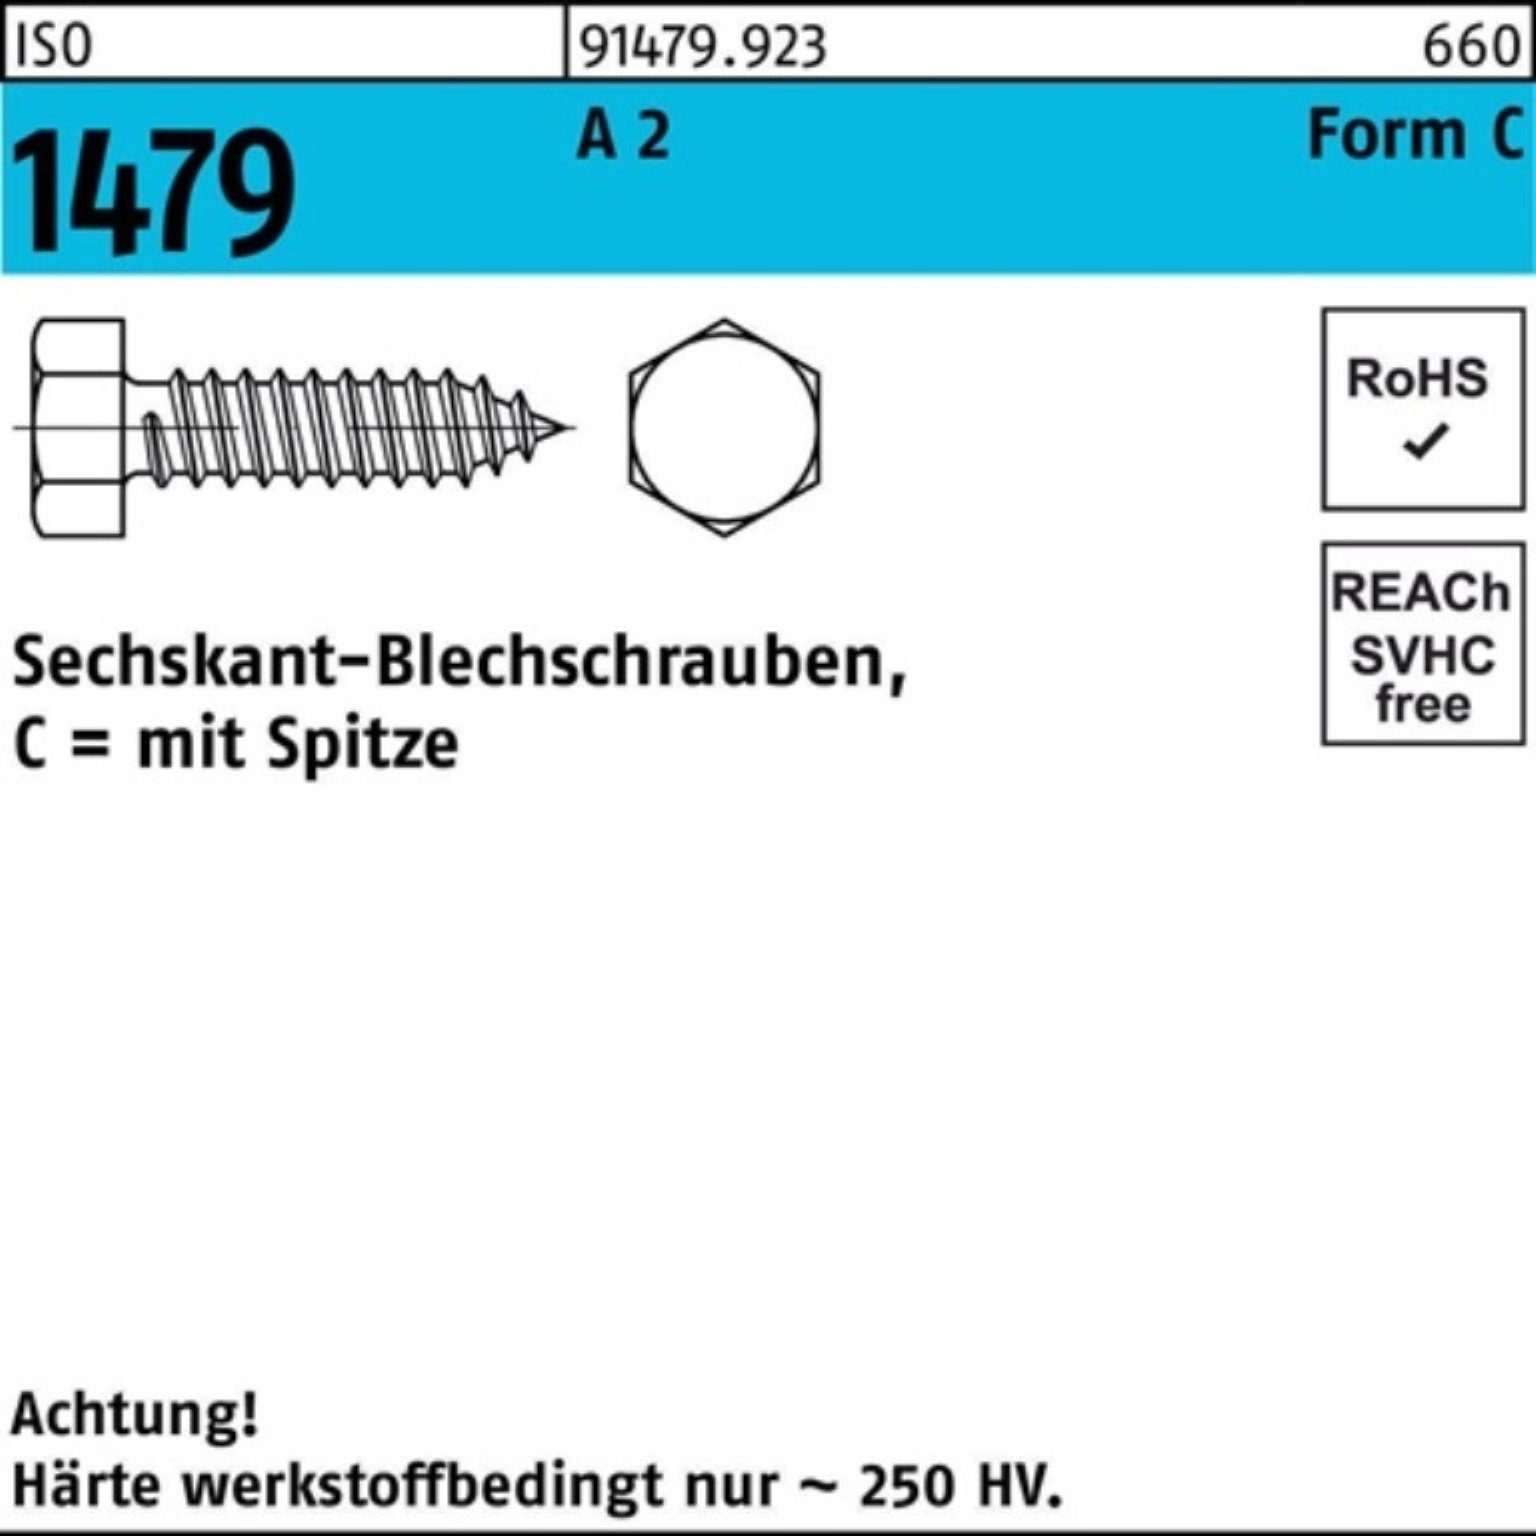 Pack ISO 2 5,5x Reyher 500er 13 Blechschraube Stück Blechschraube Spitze/6-kt 1479 C 500 A